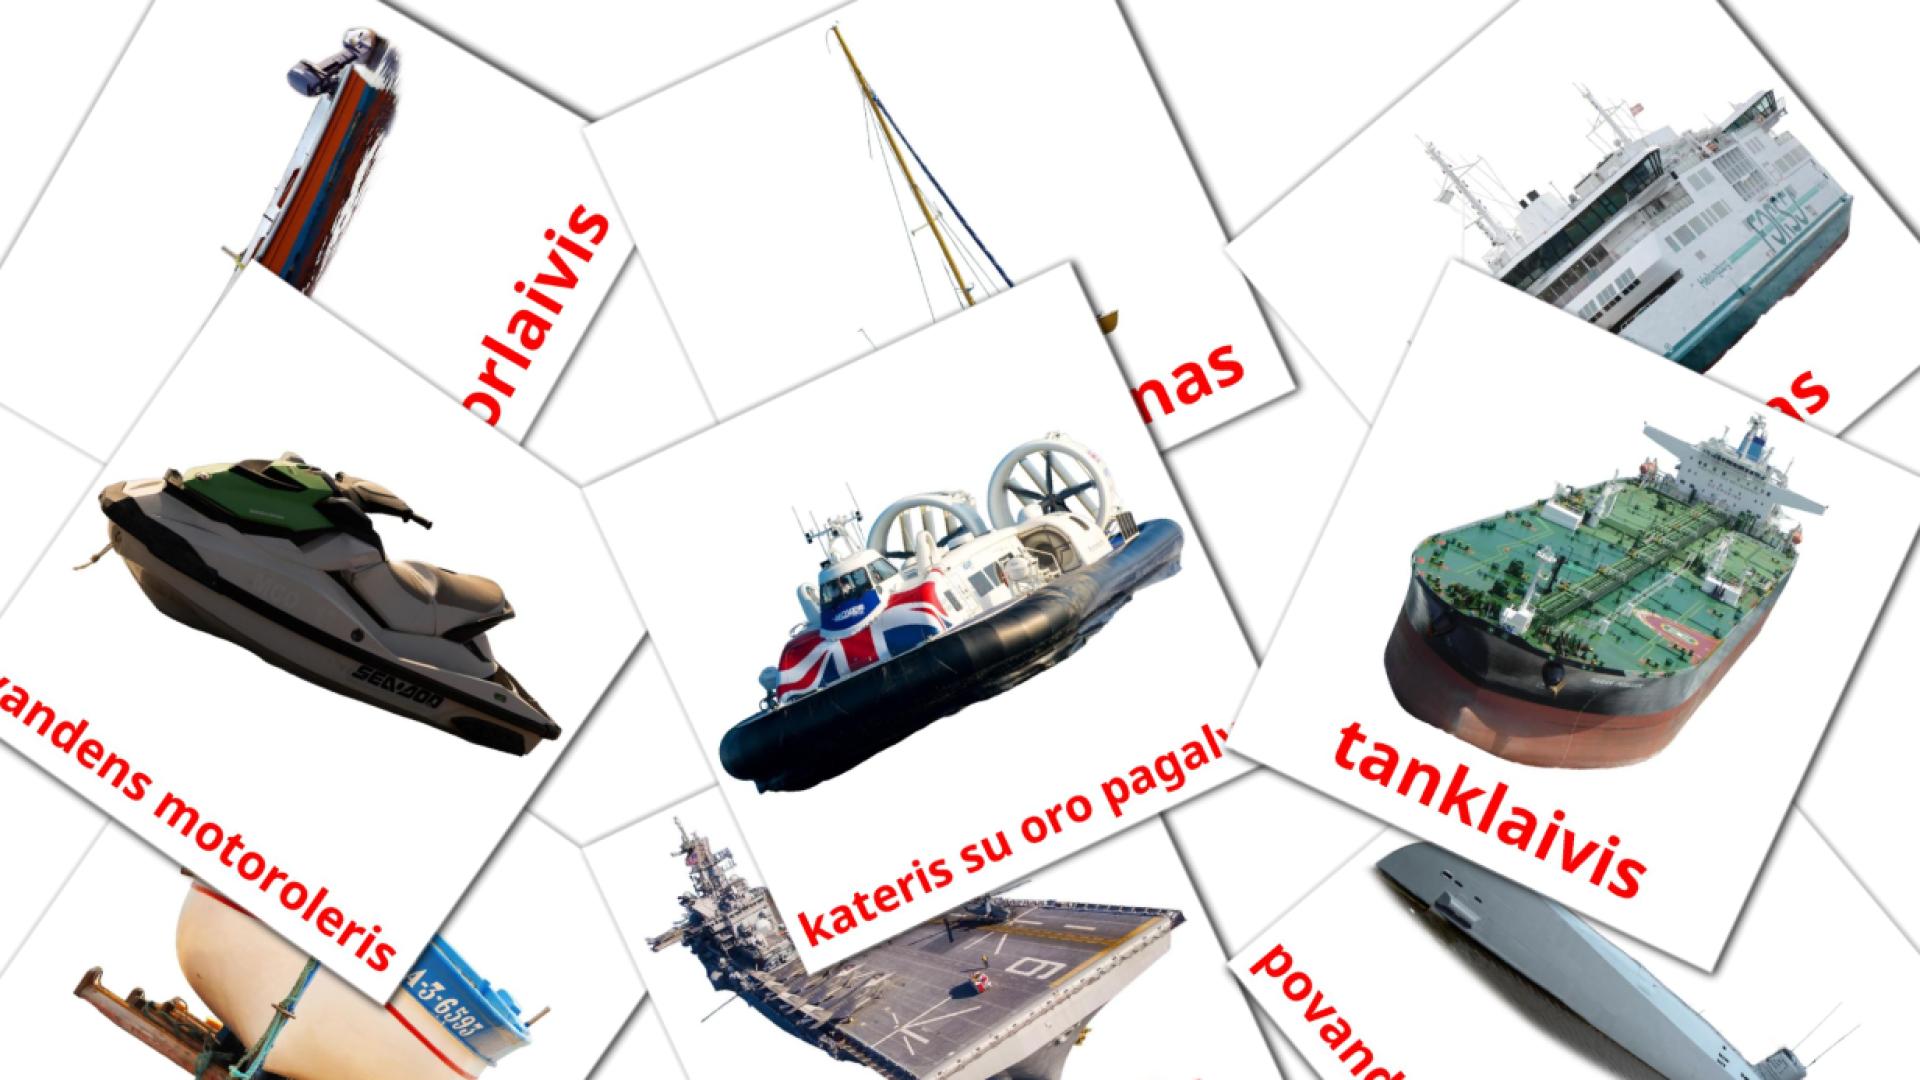 18 tarjetas didacticas de Vandens transportas